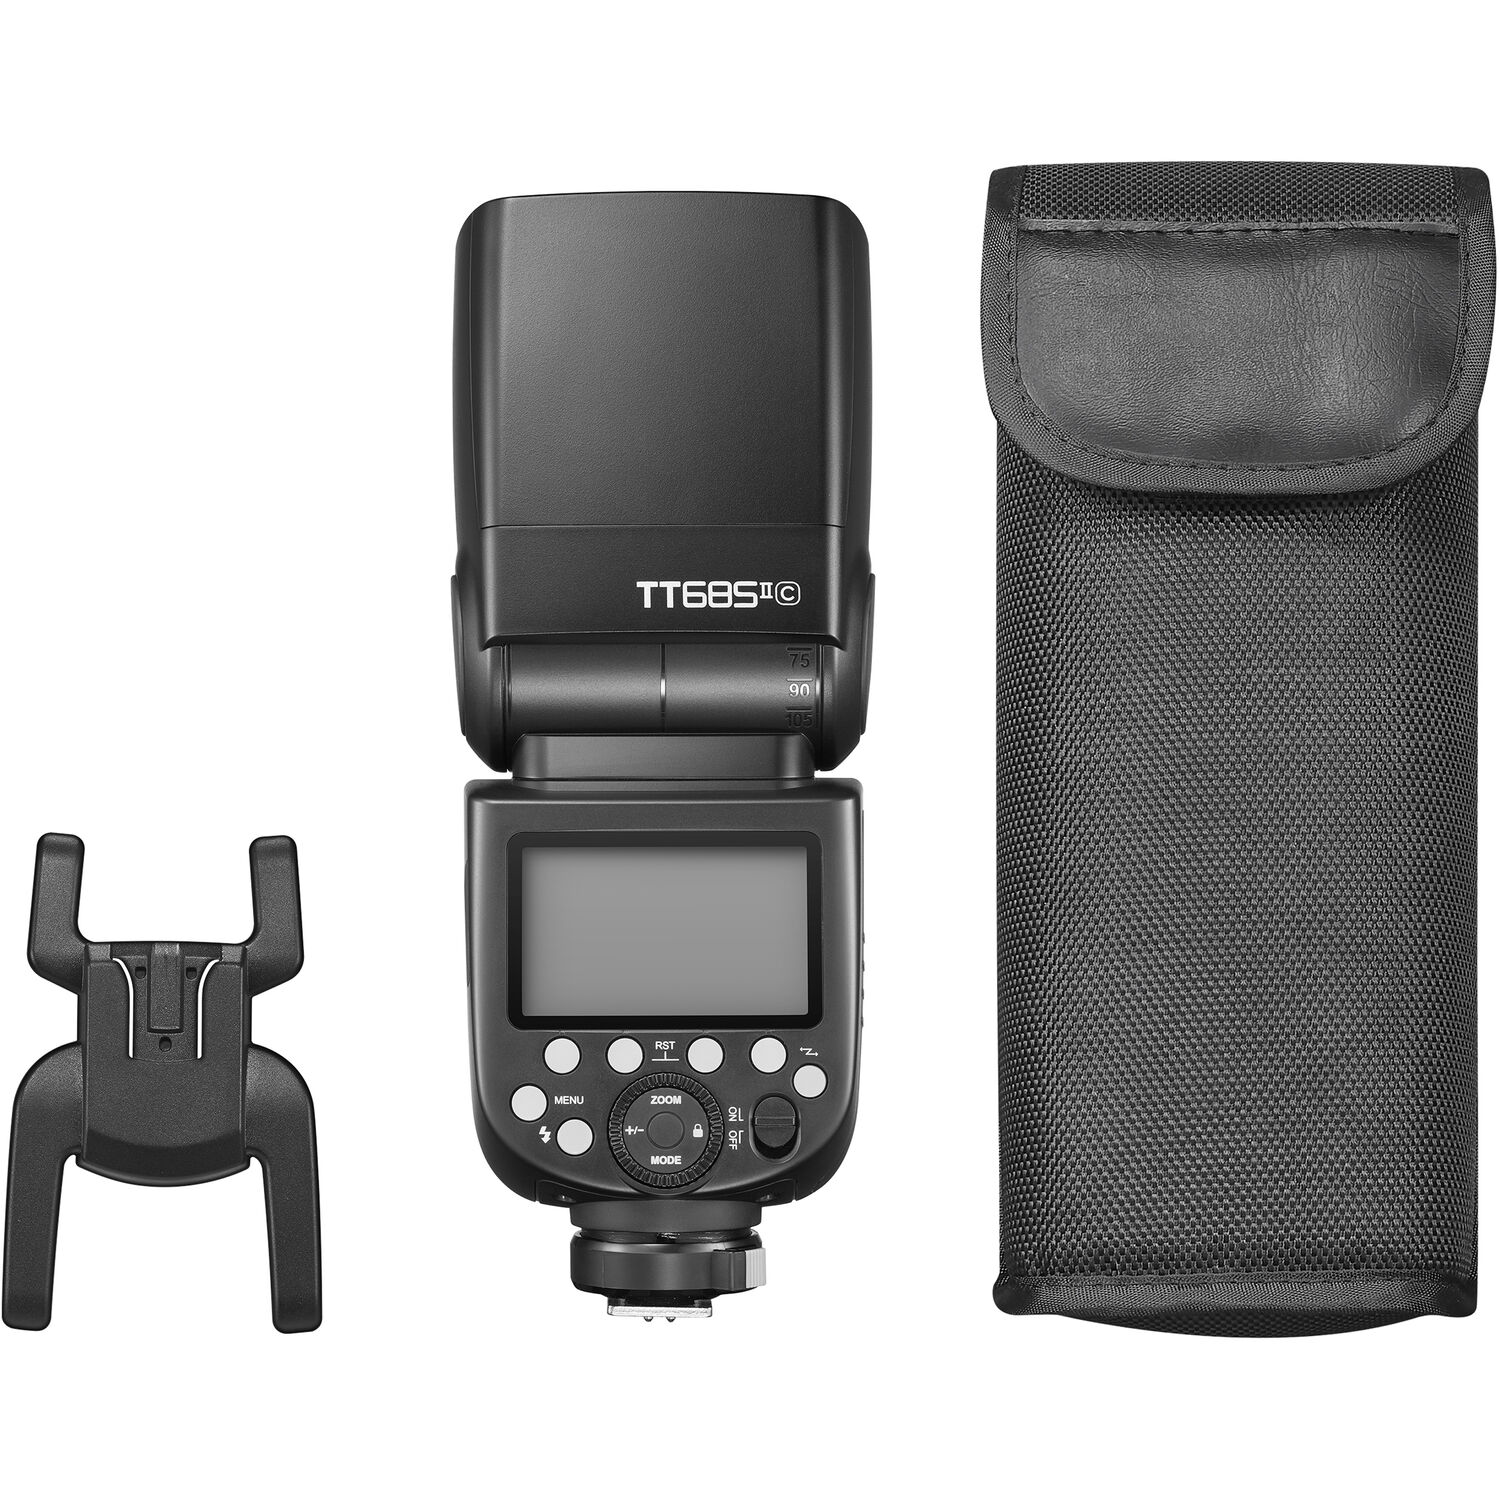 Flash TT685 II TTL GODOX para Canon - Importaciones Arturia